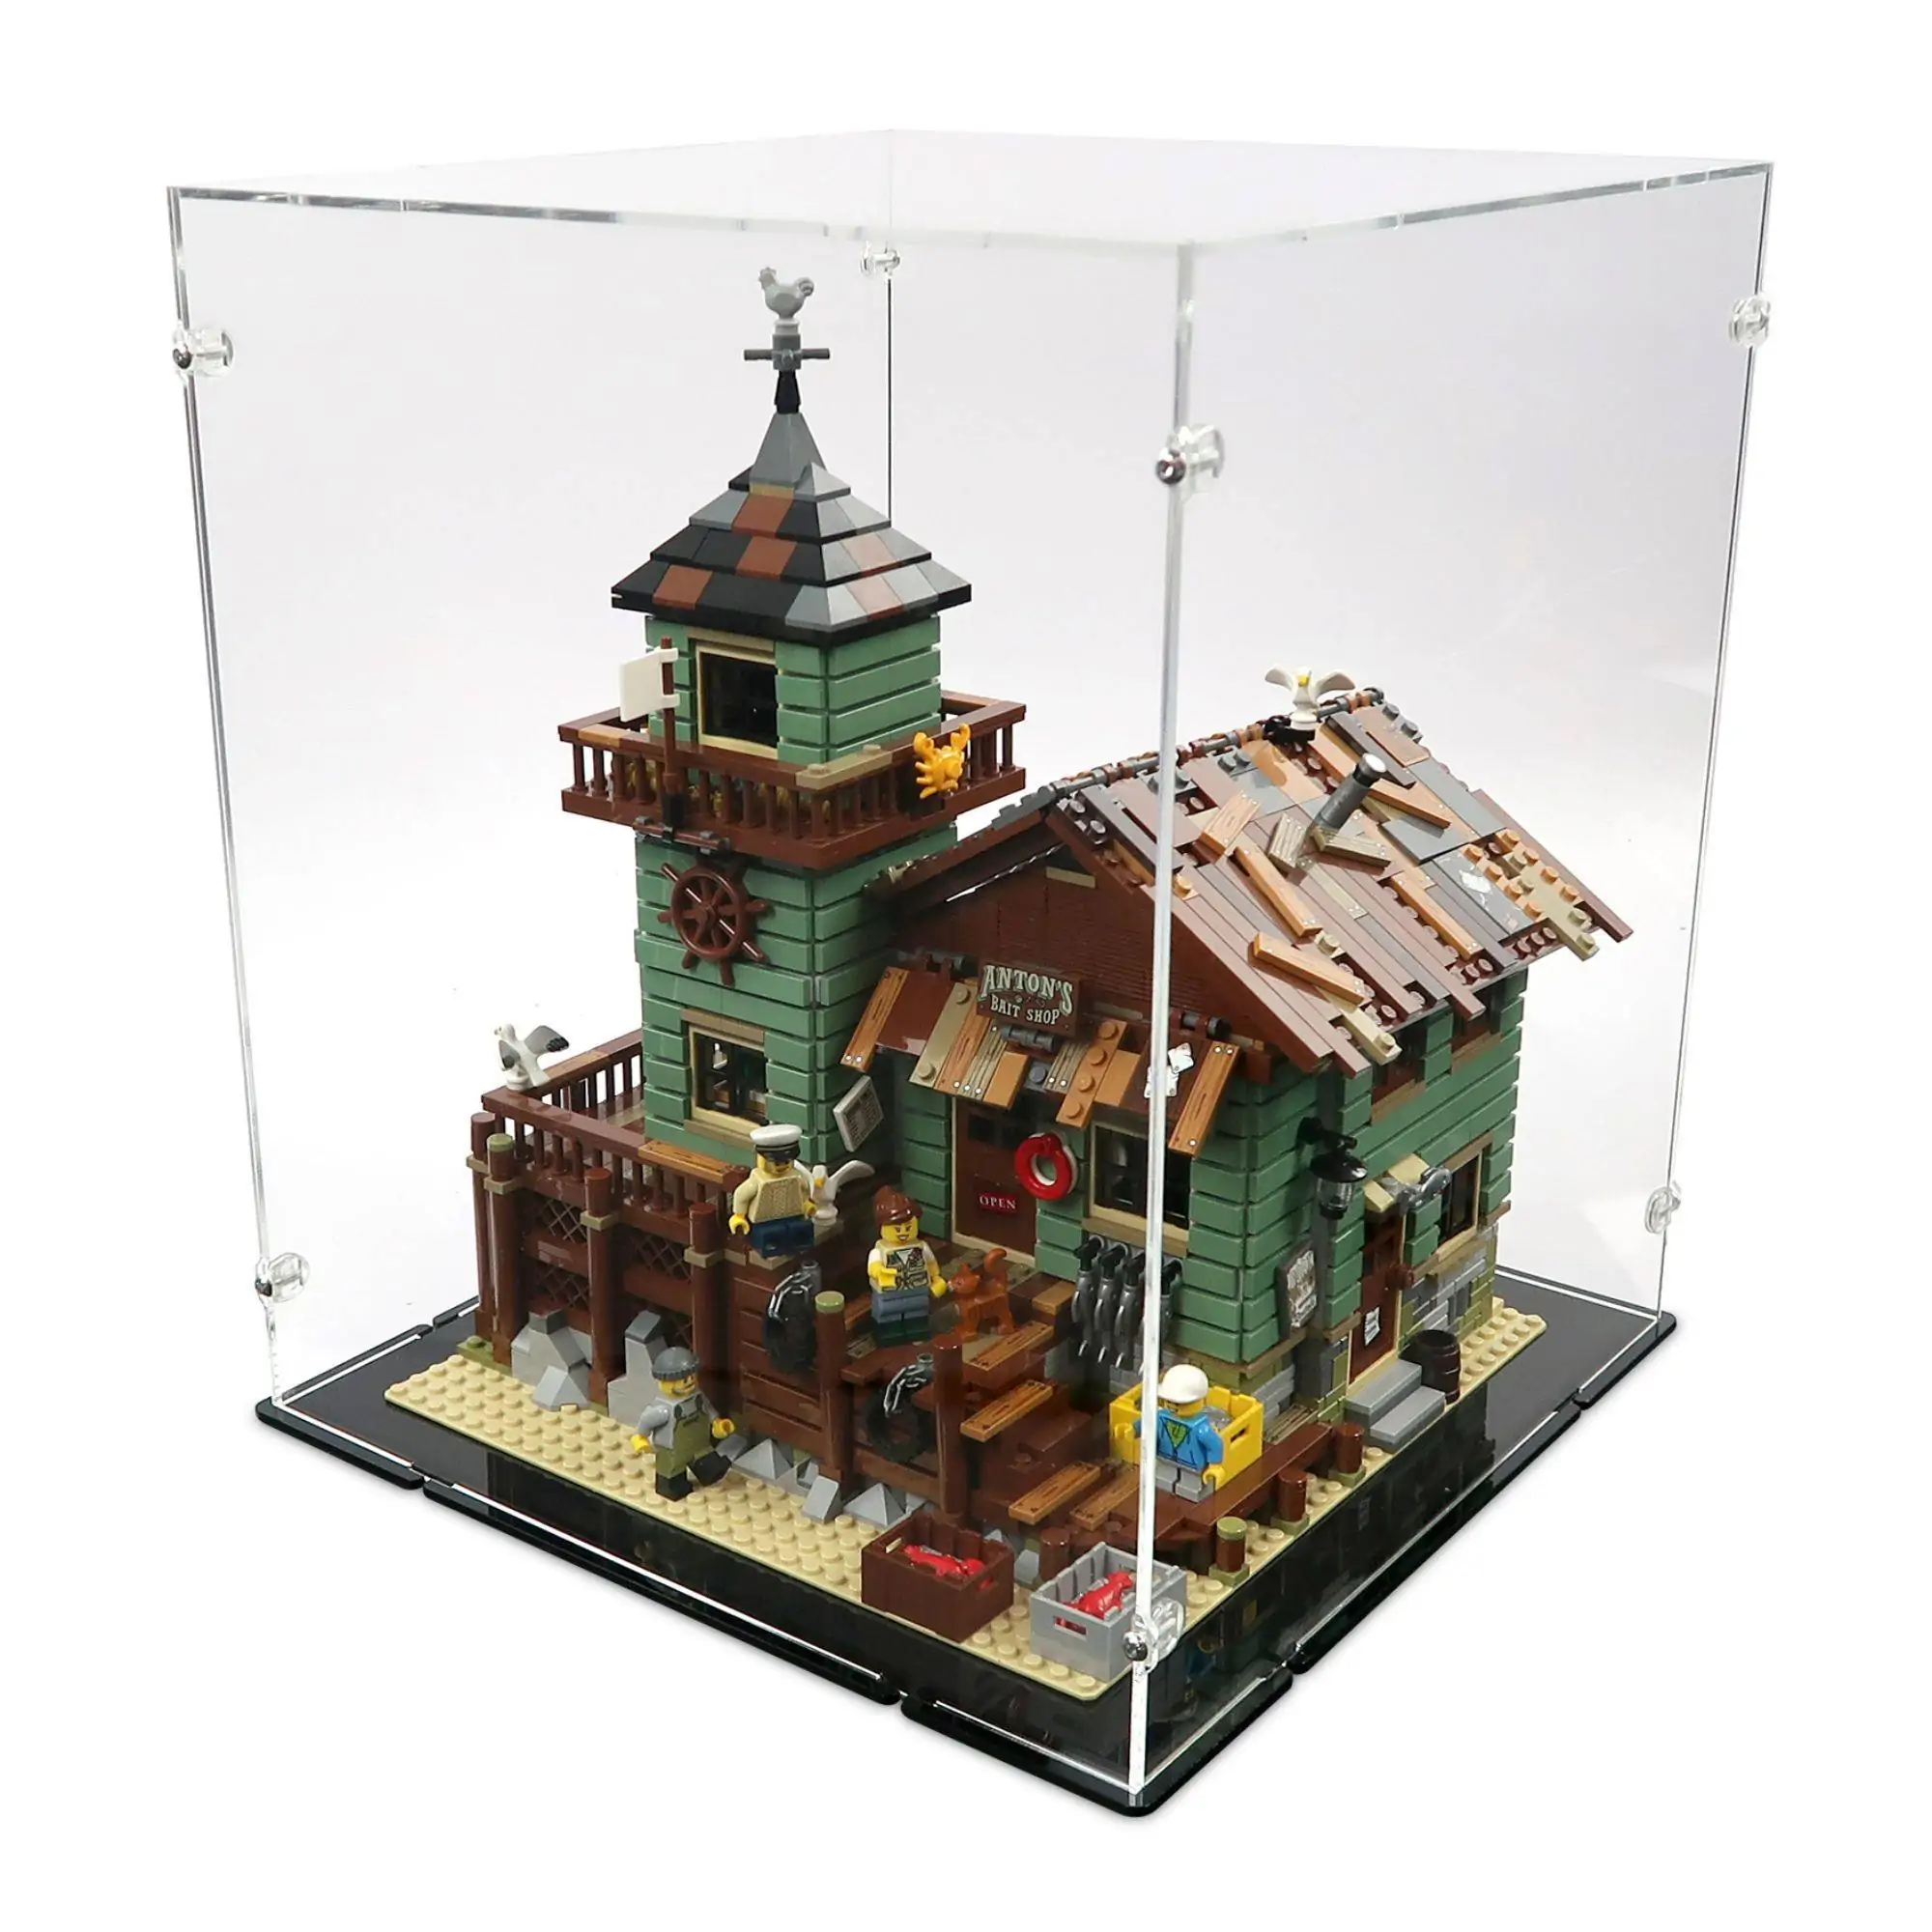 Acrylic Display for LEGO Store iDisplayit